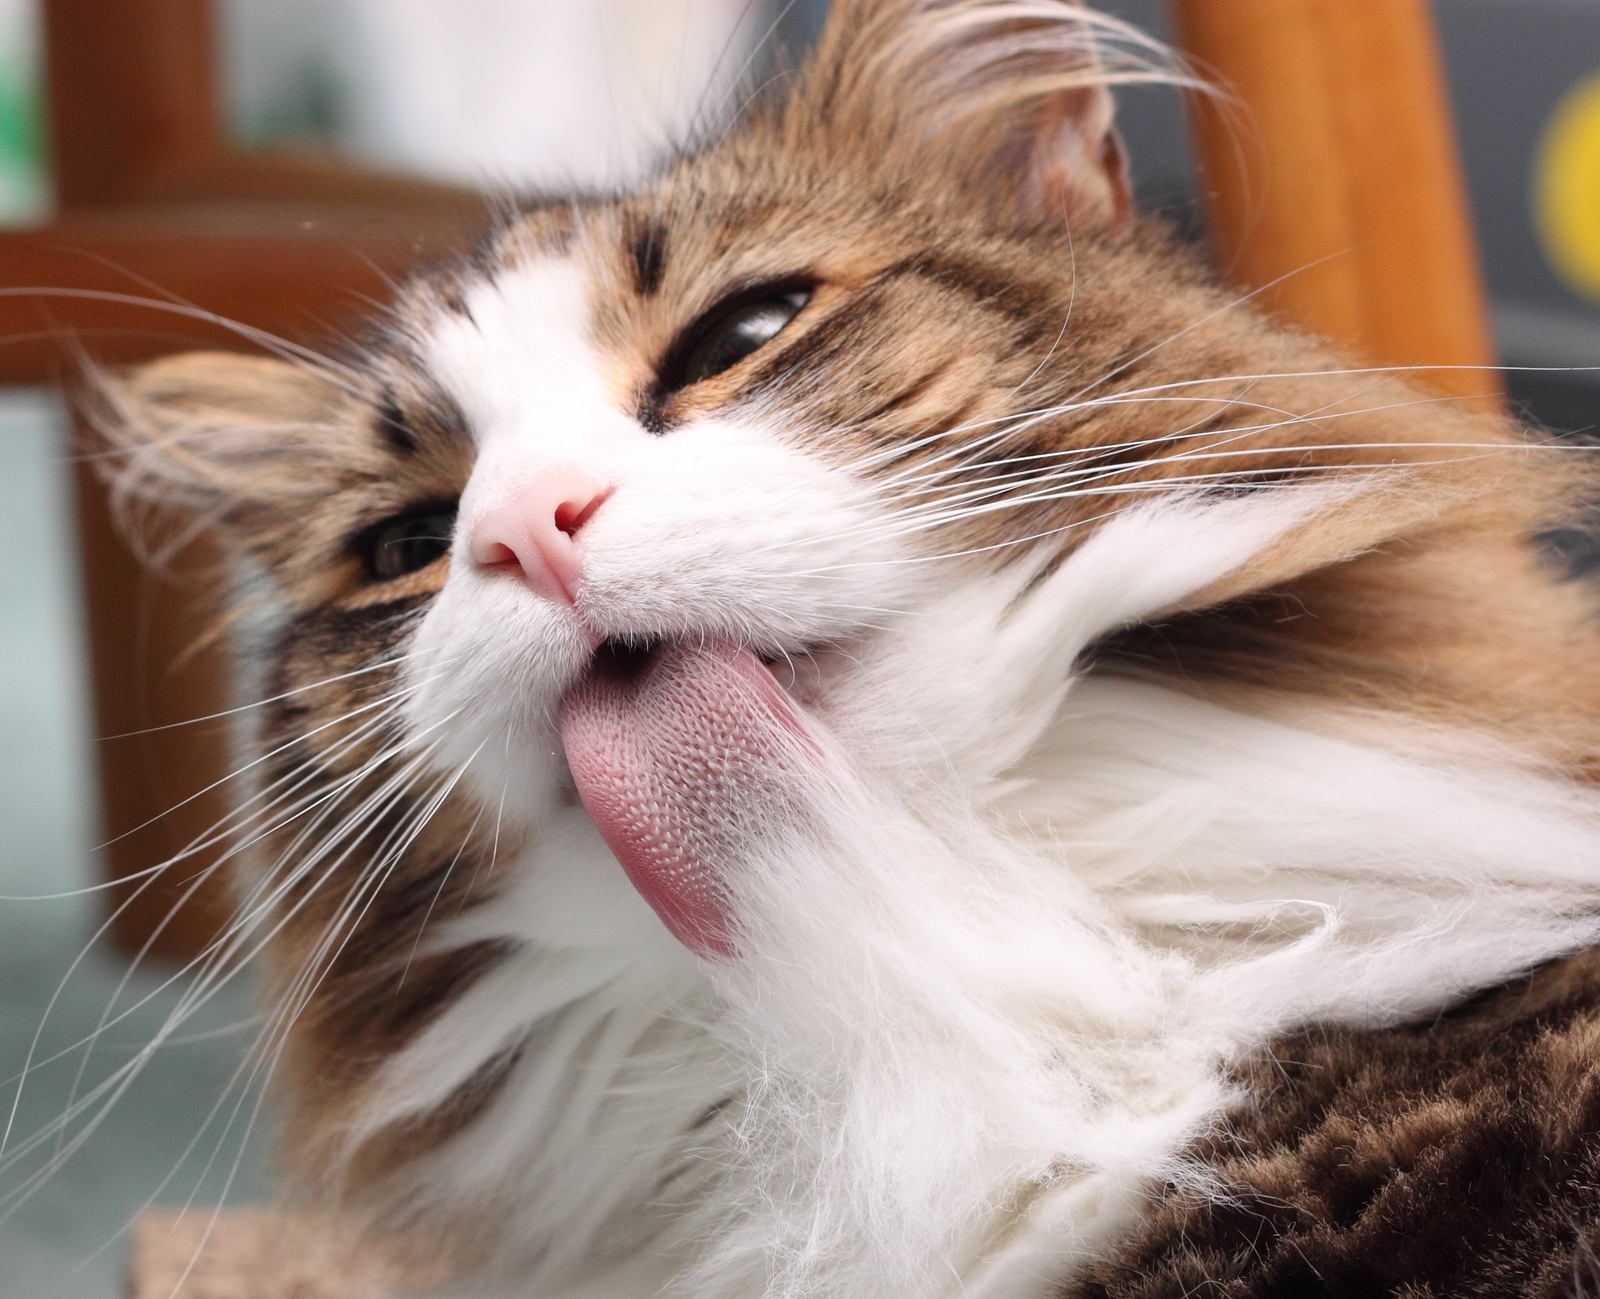 Os gatos usam a língua para se manterem limpos, quando se lambem, pelos grudam na língua e acabam sendo engolidos, causando bolas de pelos no intestino do bichano.